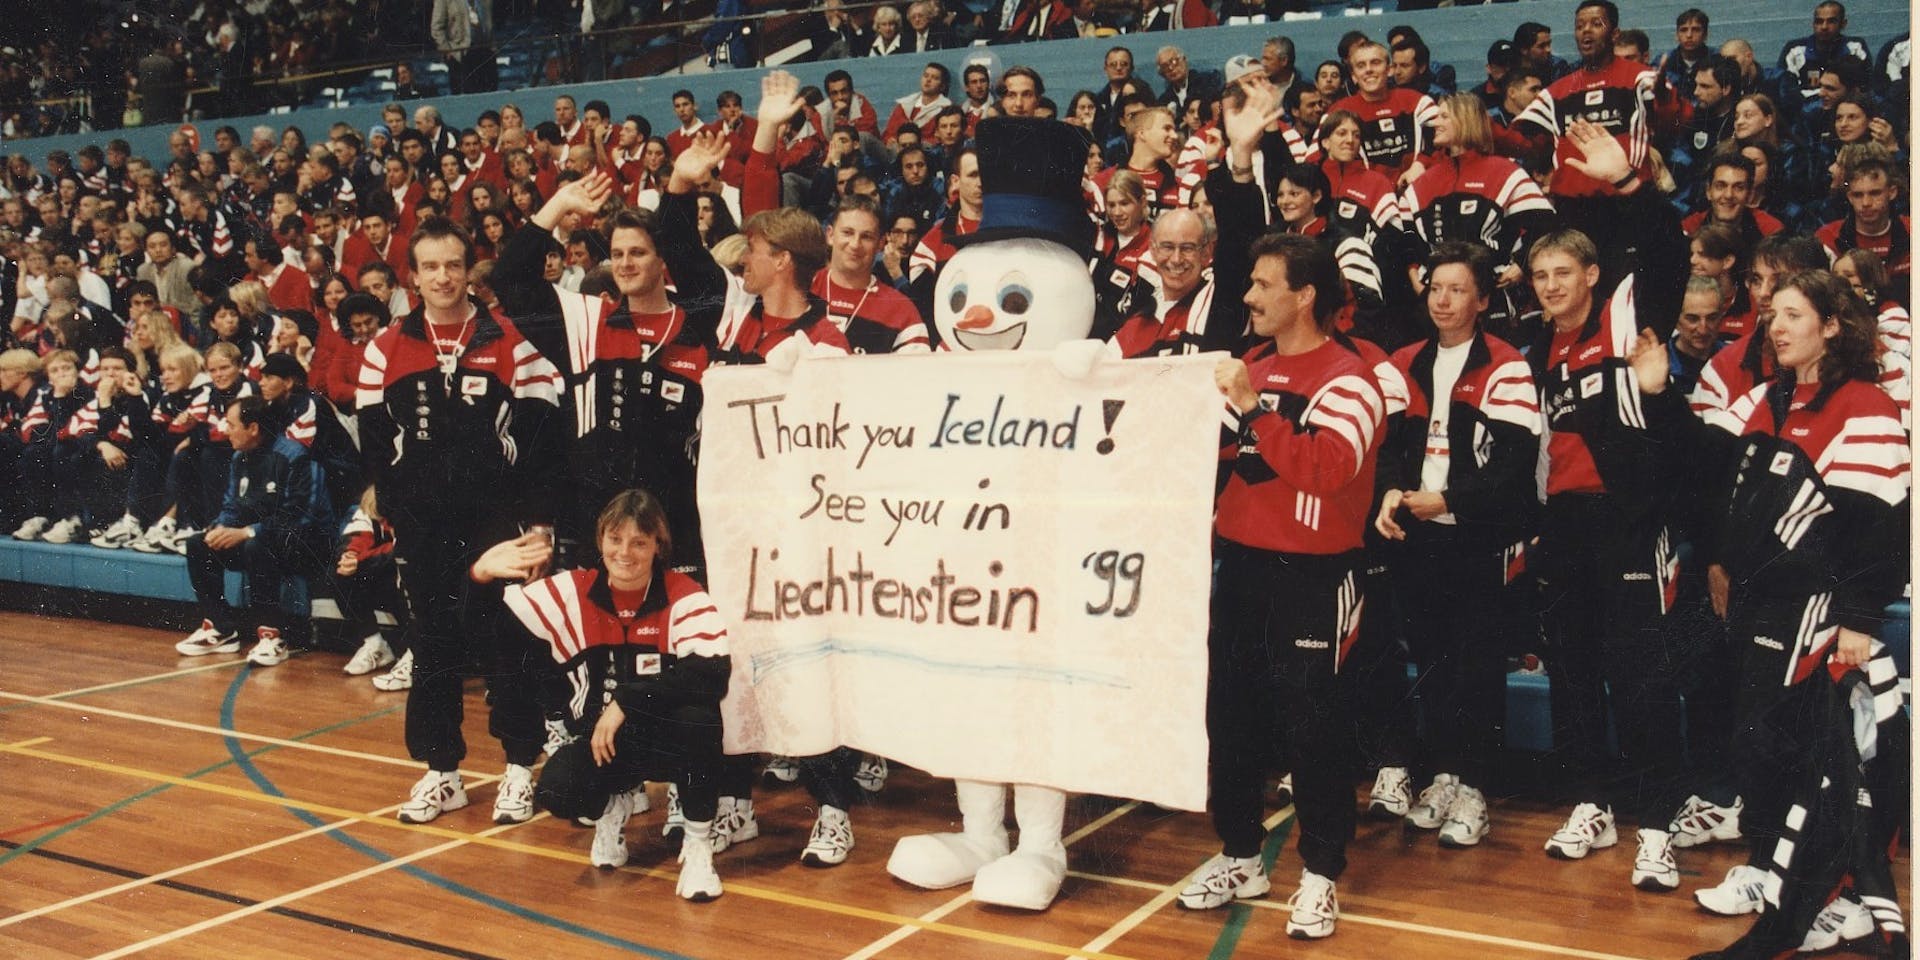 Hópmynd af keppendum frá Liechtenstein á Smáþjóðaleikunum 1997. Inn í miðjum hópnum stendur snjókarl með borða sem á stendur "Thank you Iceland! See you in Leichtenstein´99". Mynd frá ÍSI.